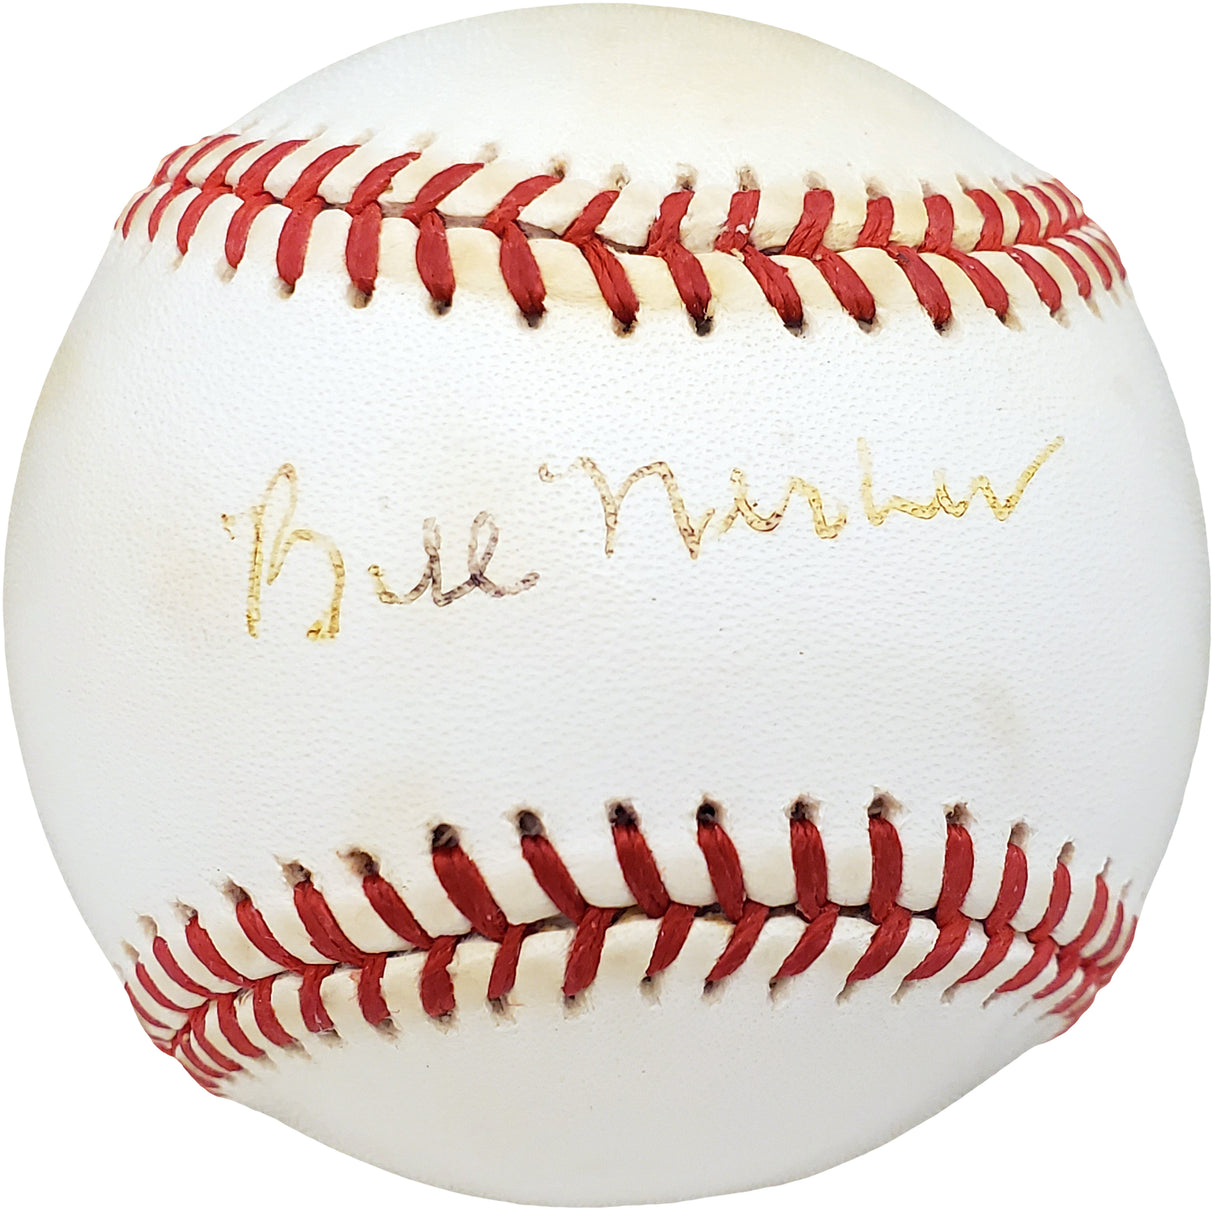 Bill Werber Autographed Official AL Baseball New York Yankees, Cincinnati Reds Beckett BAS #V68014